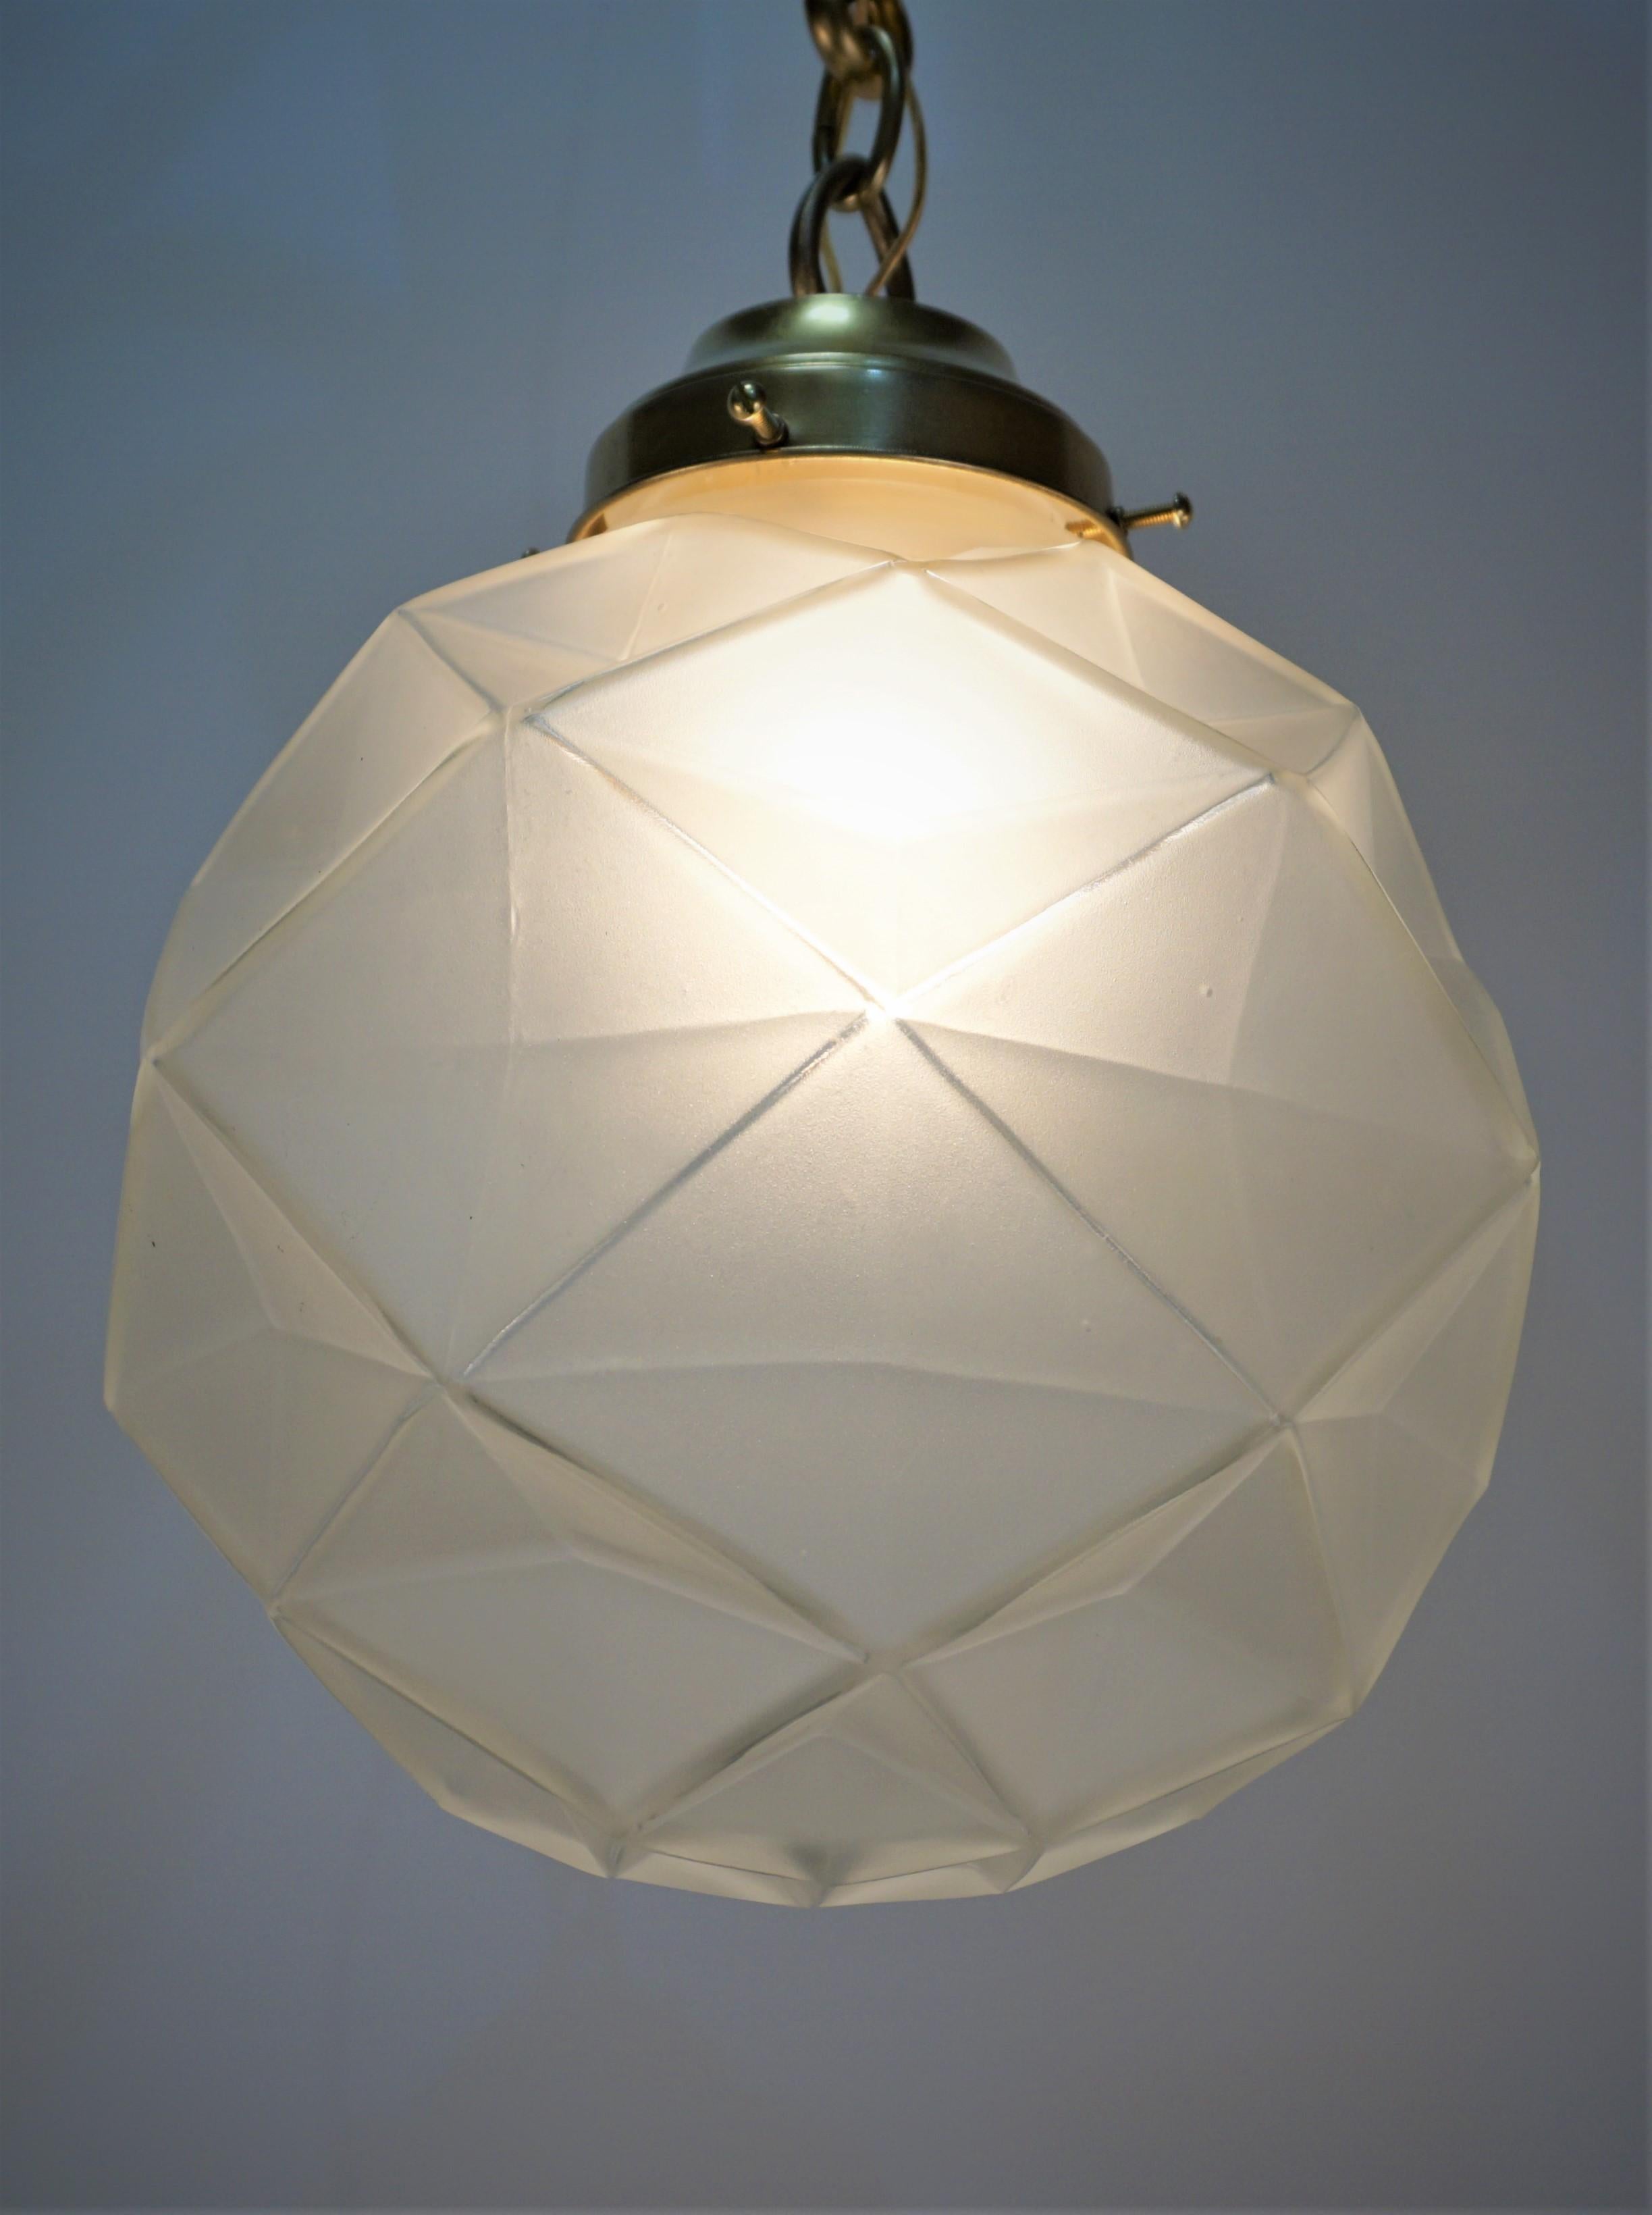 Magnifique lustre pendentif globe en verre clair givré au design géométrique avec quincaillerie en bronze.
Ampoule simple 250 watts max.